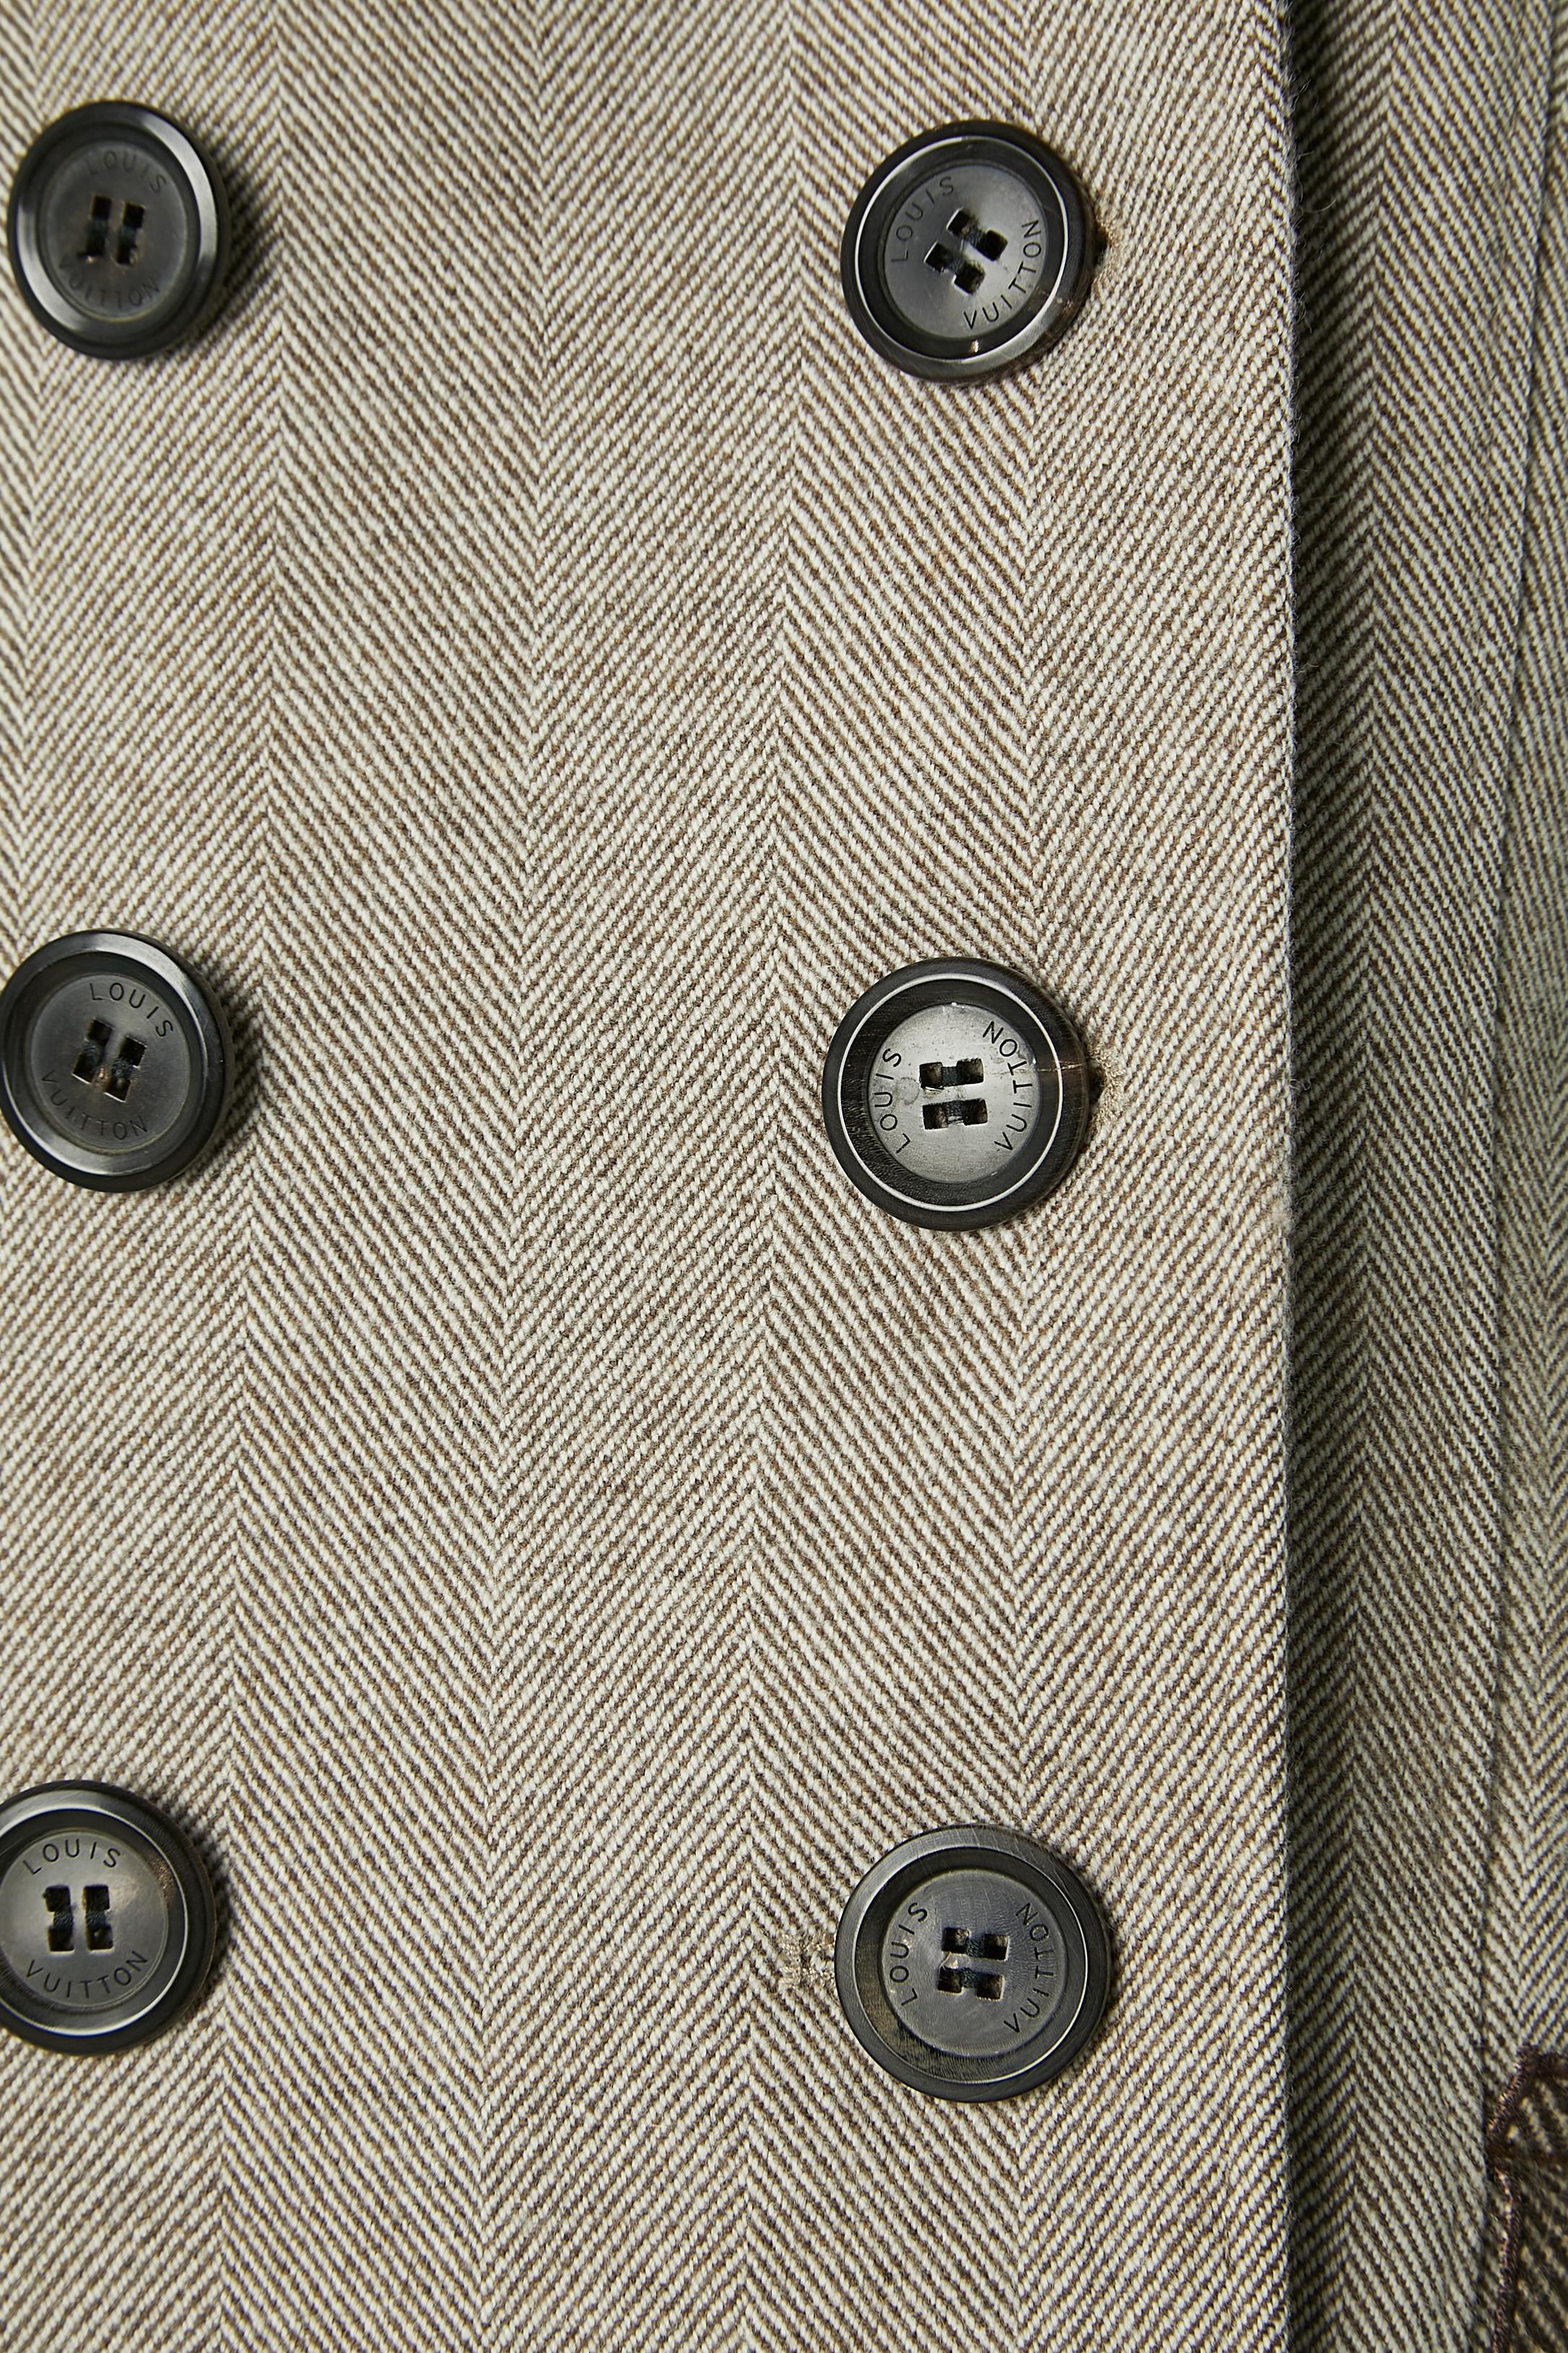 Combinaison jupe à double boutonnage avec volants. Composition du tissu principal : 90% laine, 10% cachemire. Doublure : 85% coton, 15% laine. 2ème doublure : soie. Boutons et boutonnières marqués sur le devant et sur les poignets. 2 boutons